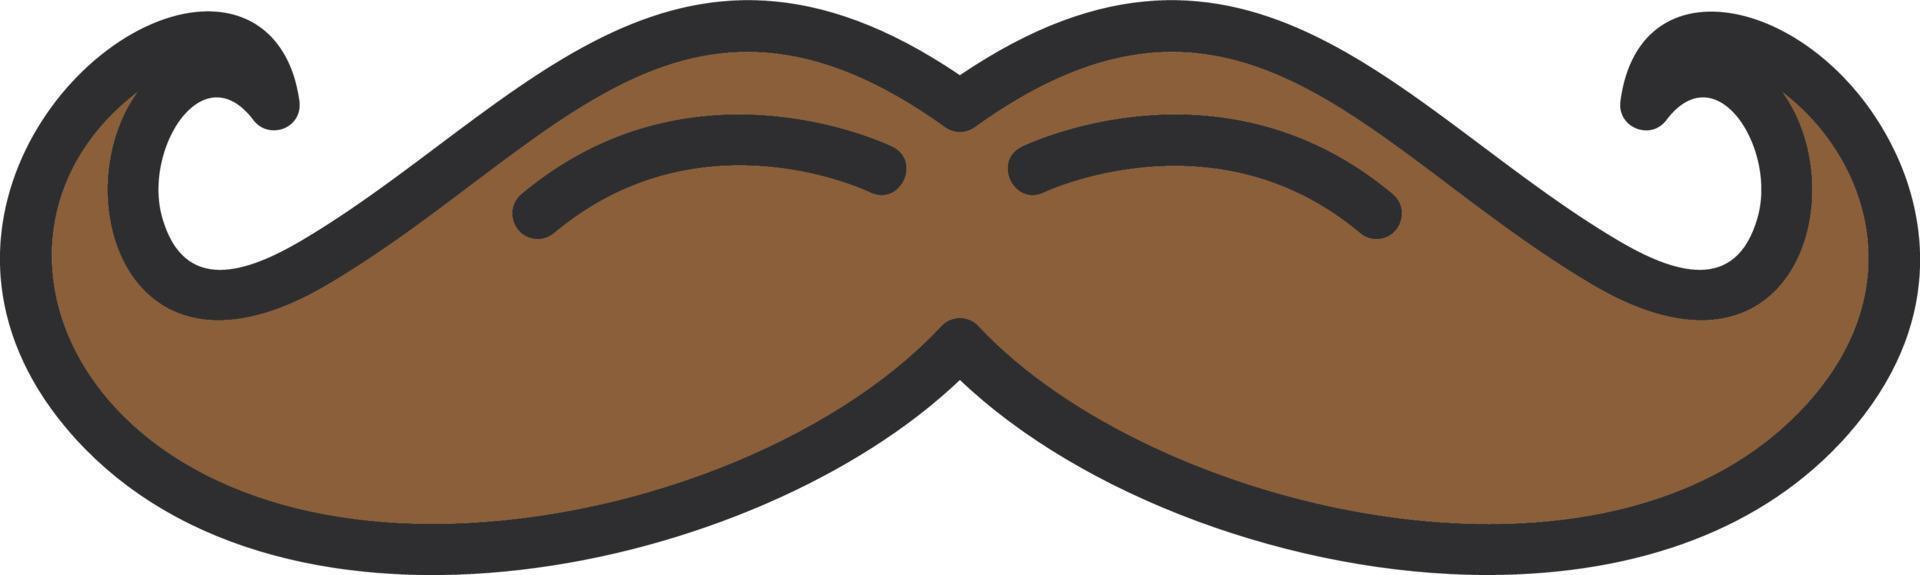 conception d'icône vecteur moustache